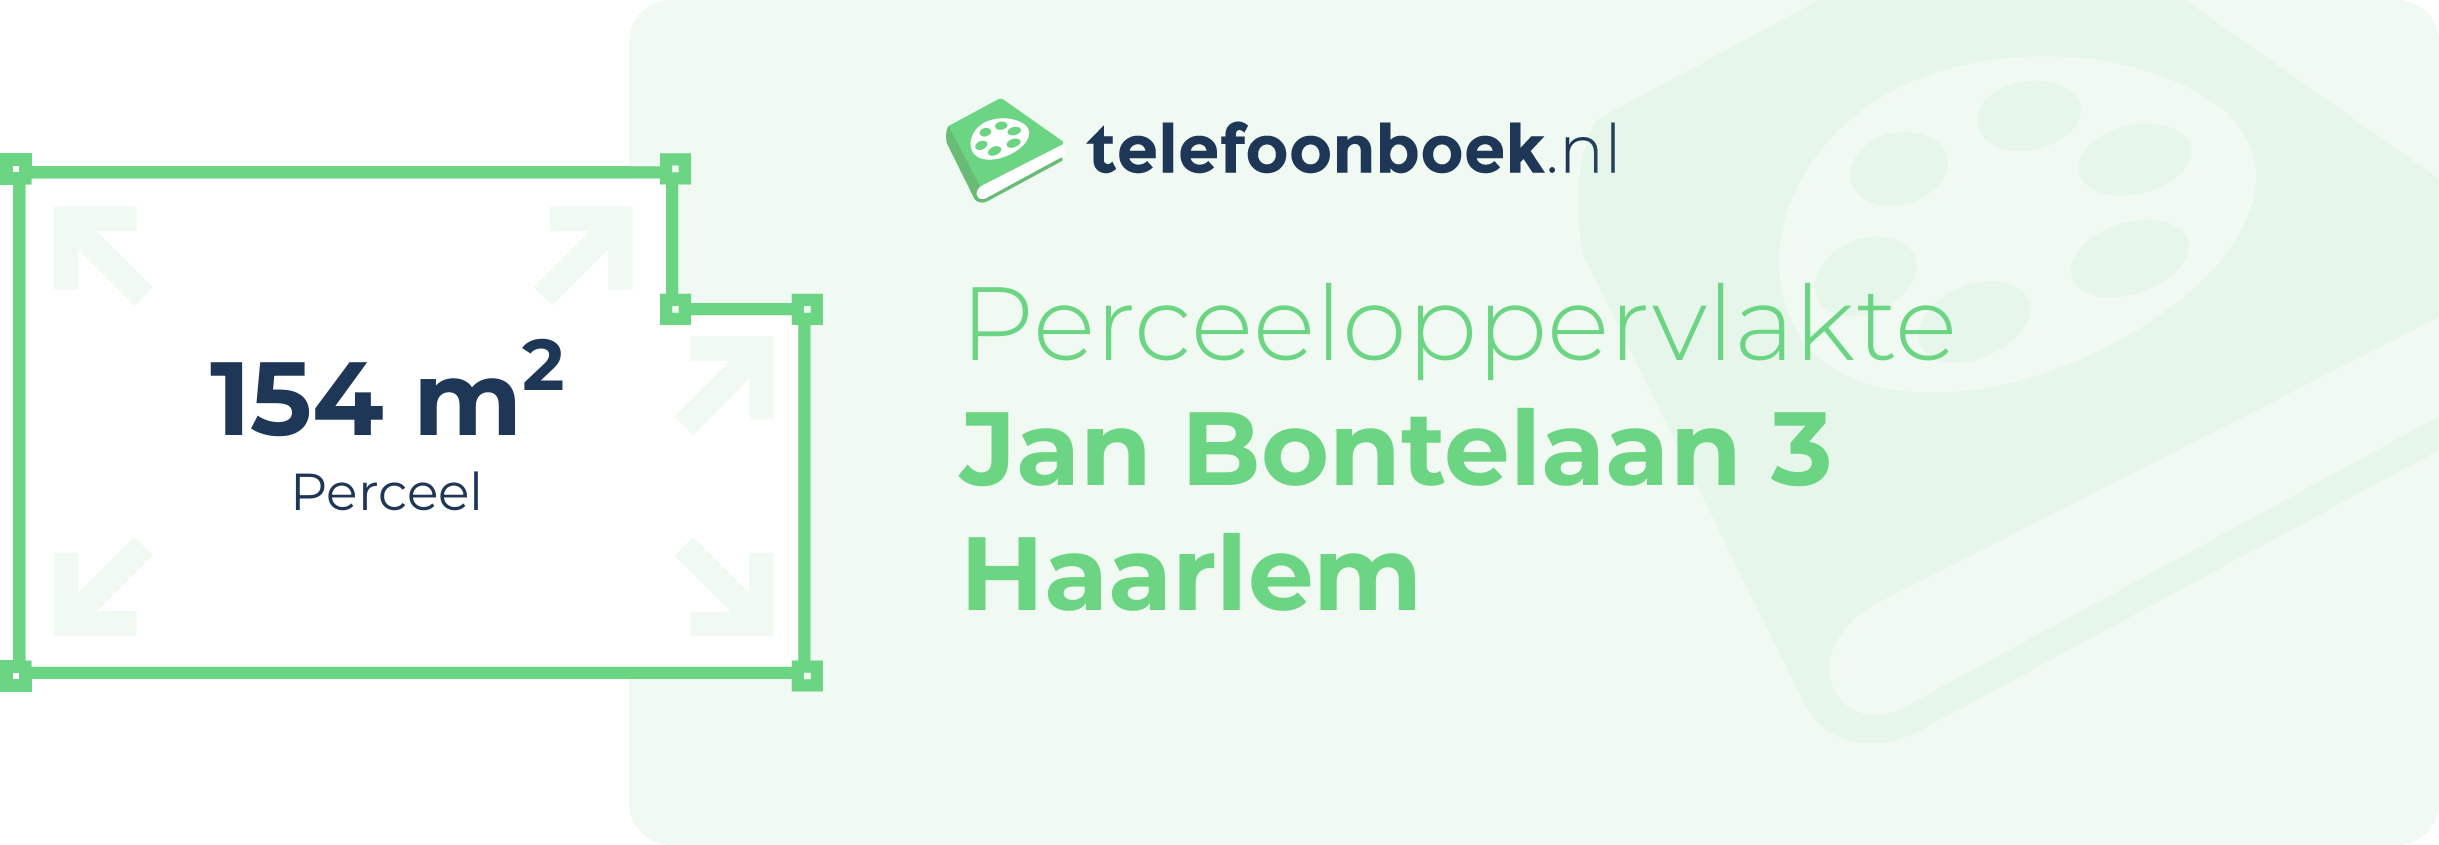 Perceeloppervlakte Jan Bontelaan 3 Haarlem